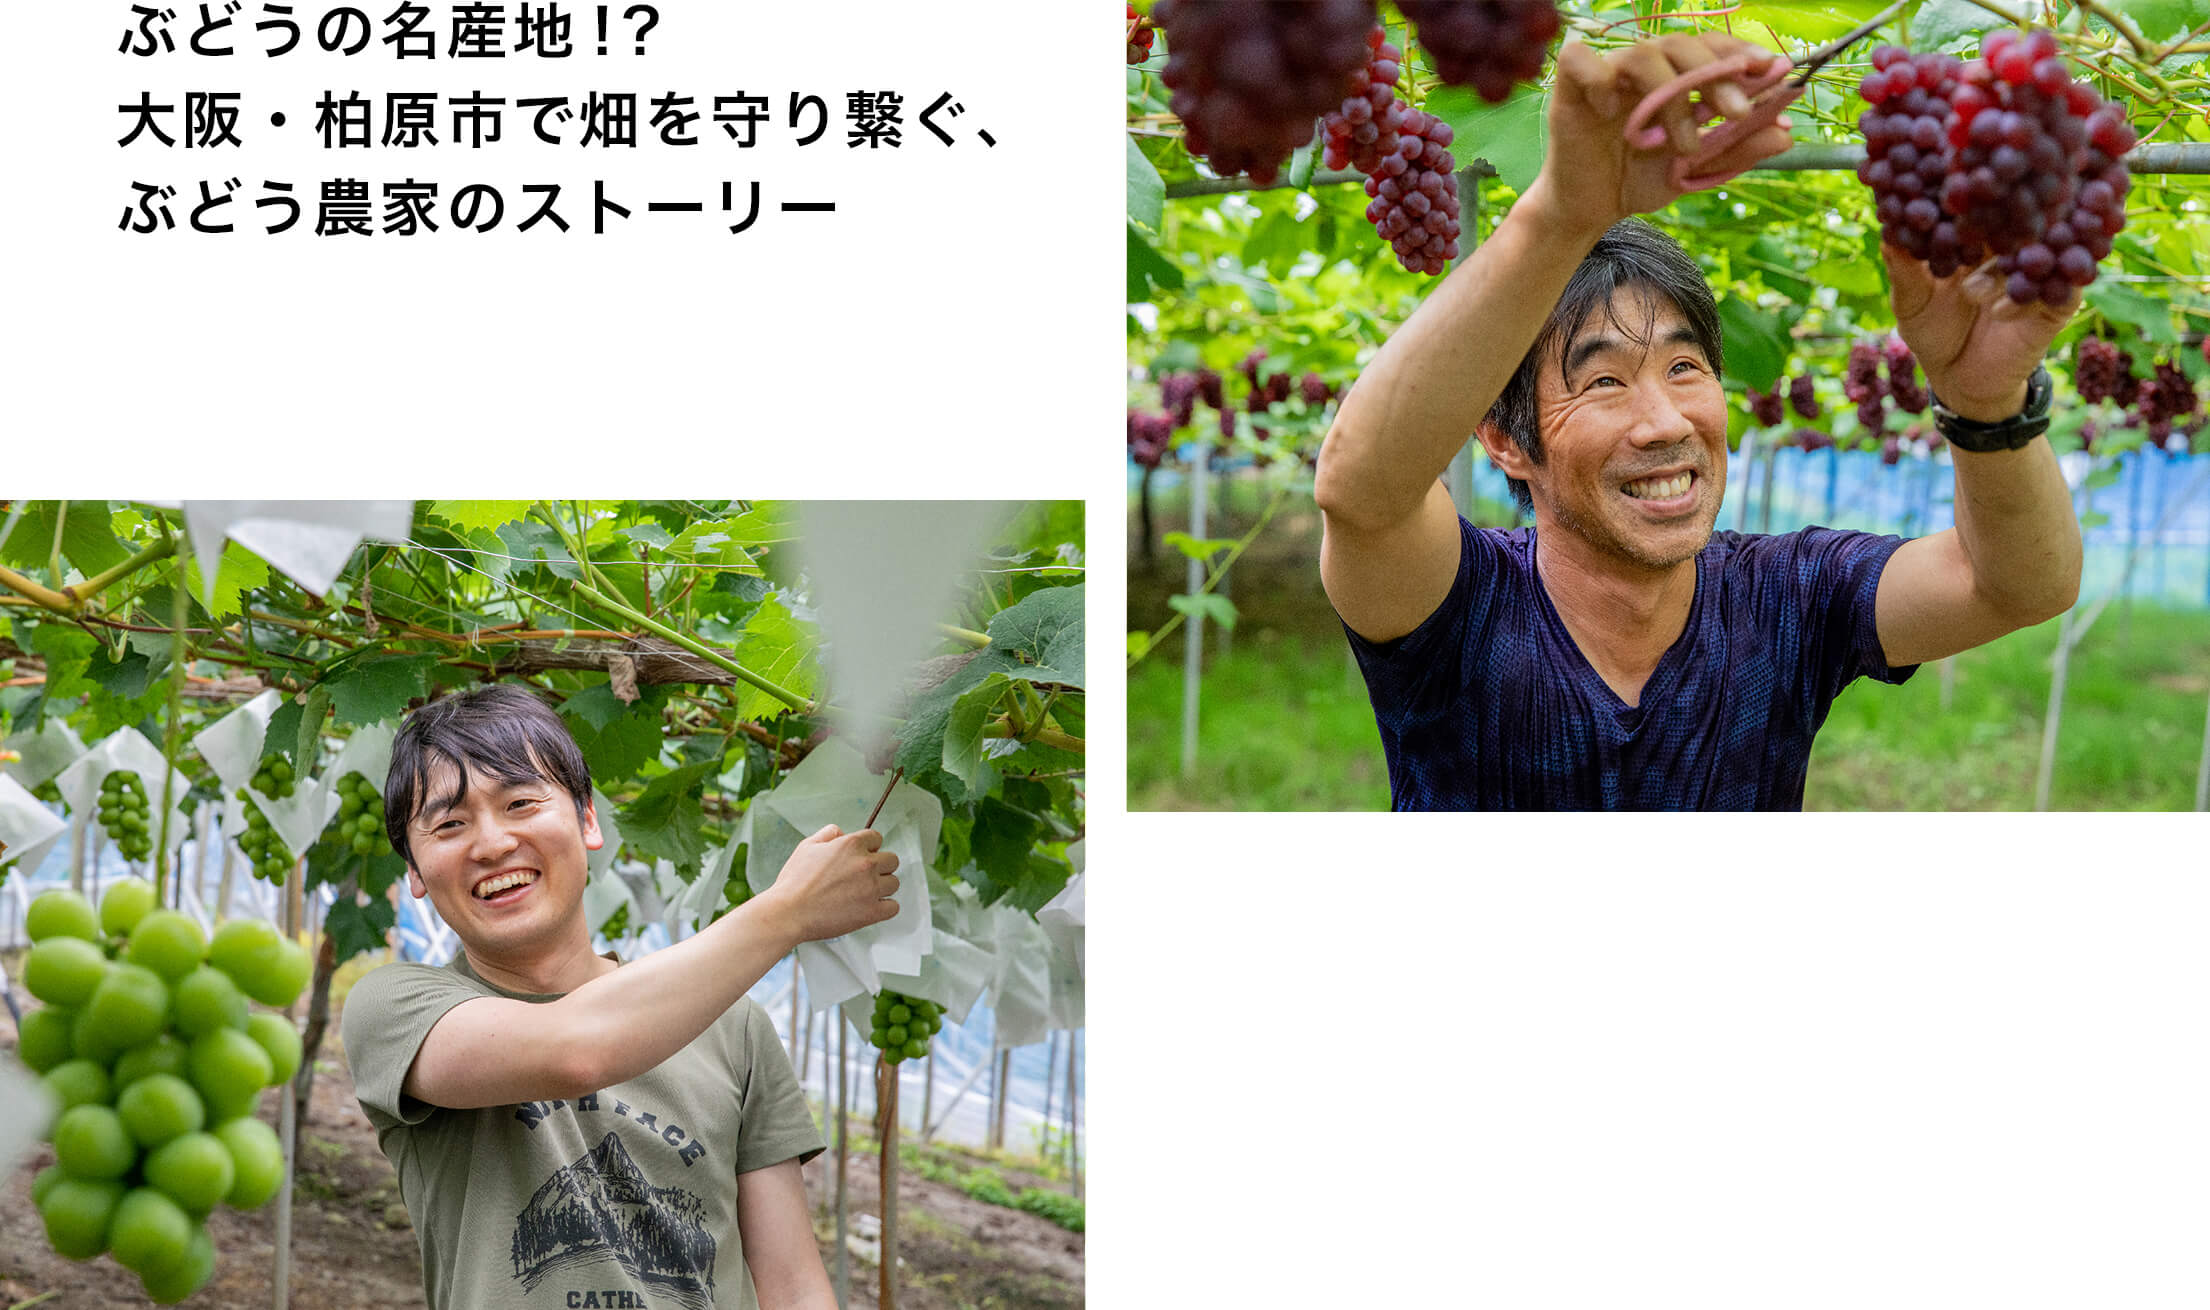 実は大阪は”全国屈指”のぶどうの産地だった？木成り完熟・朝どりで味わう「柏原ぶどうの物語」。